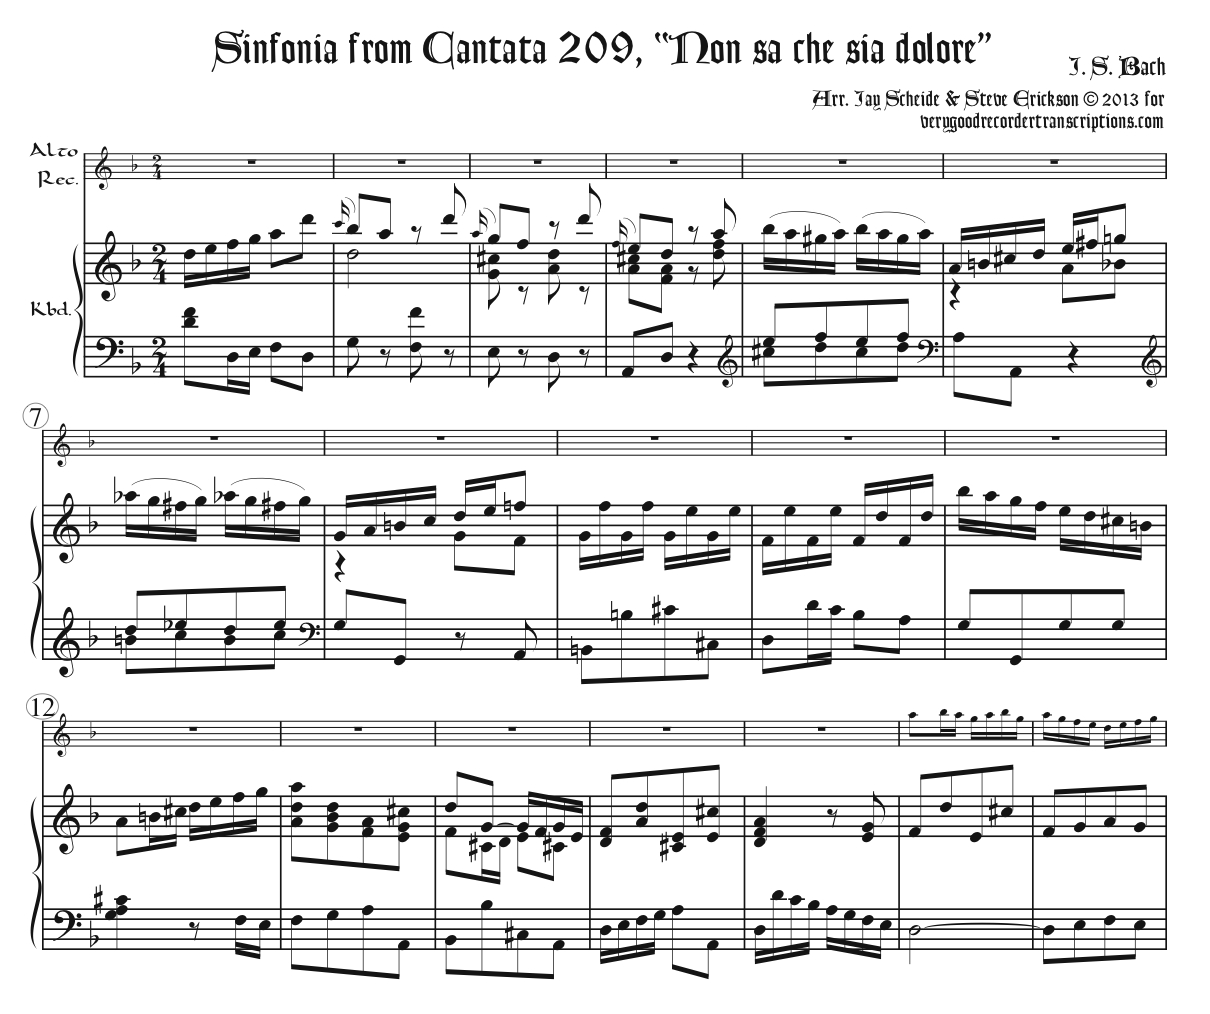 Sinfonia from Cantata 209, *Non sa che sia dolore*